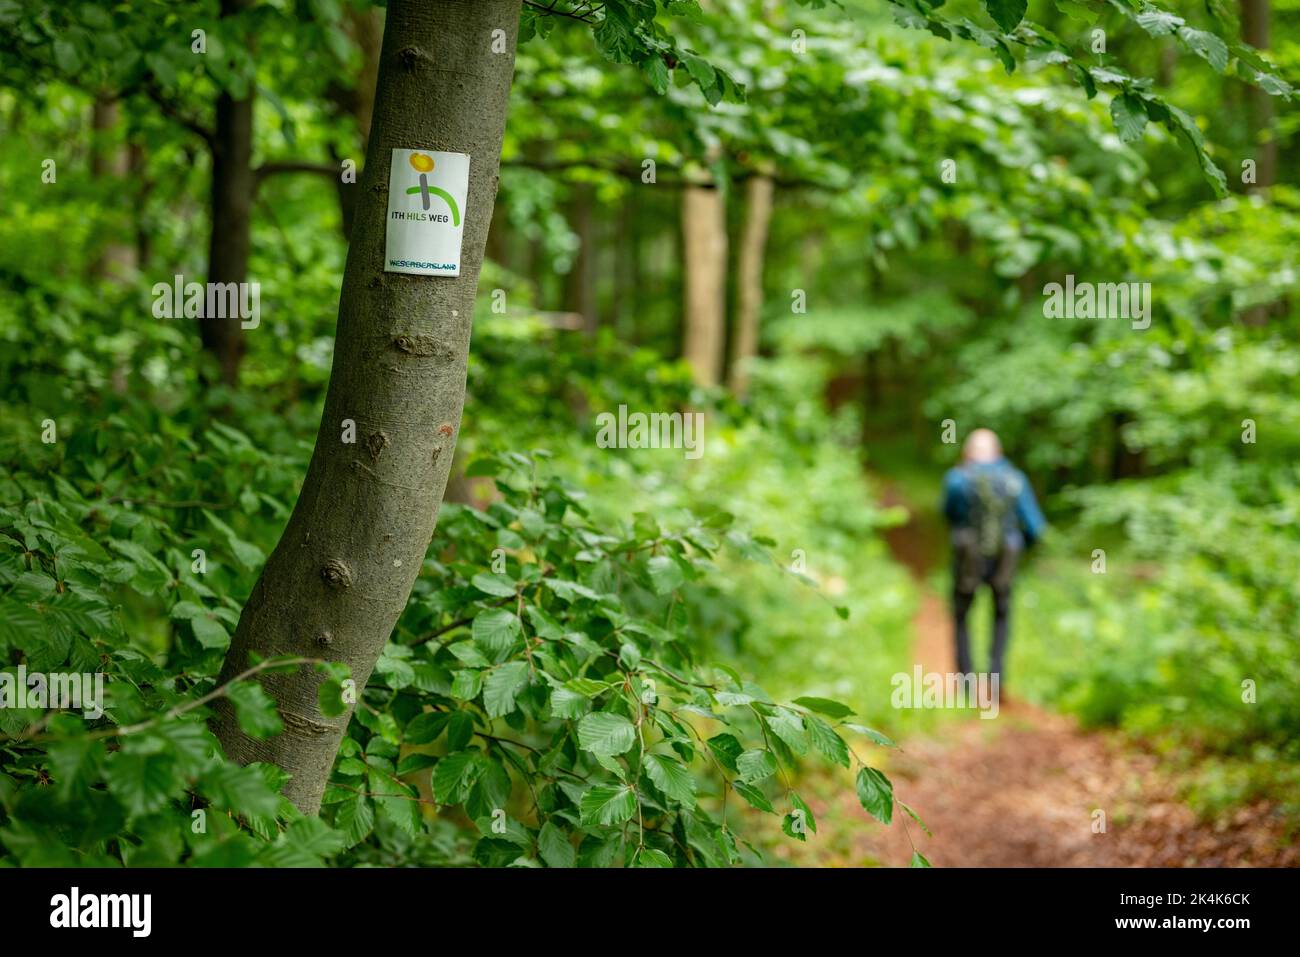 Marqueur de sentier pour le sentier de randonnée longue distance 'Ith-HiLS-Weg' an a Tree, avec un randonneur flou en arrière-plan, Weserbergland, Allemagne Banque D'Images